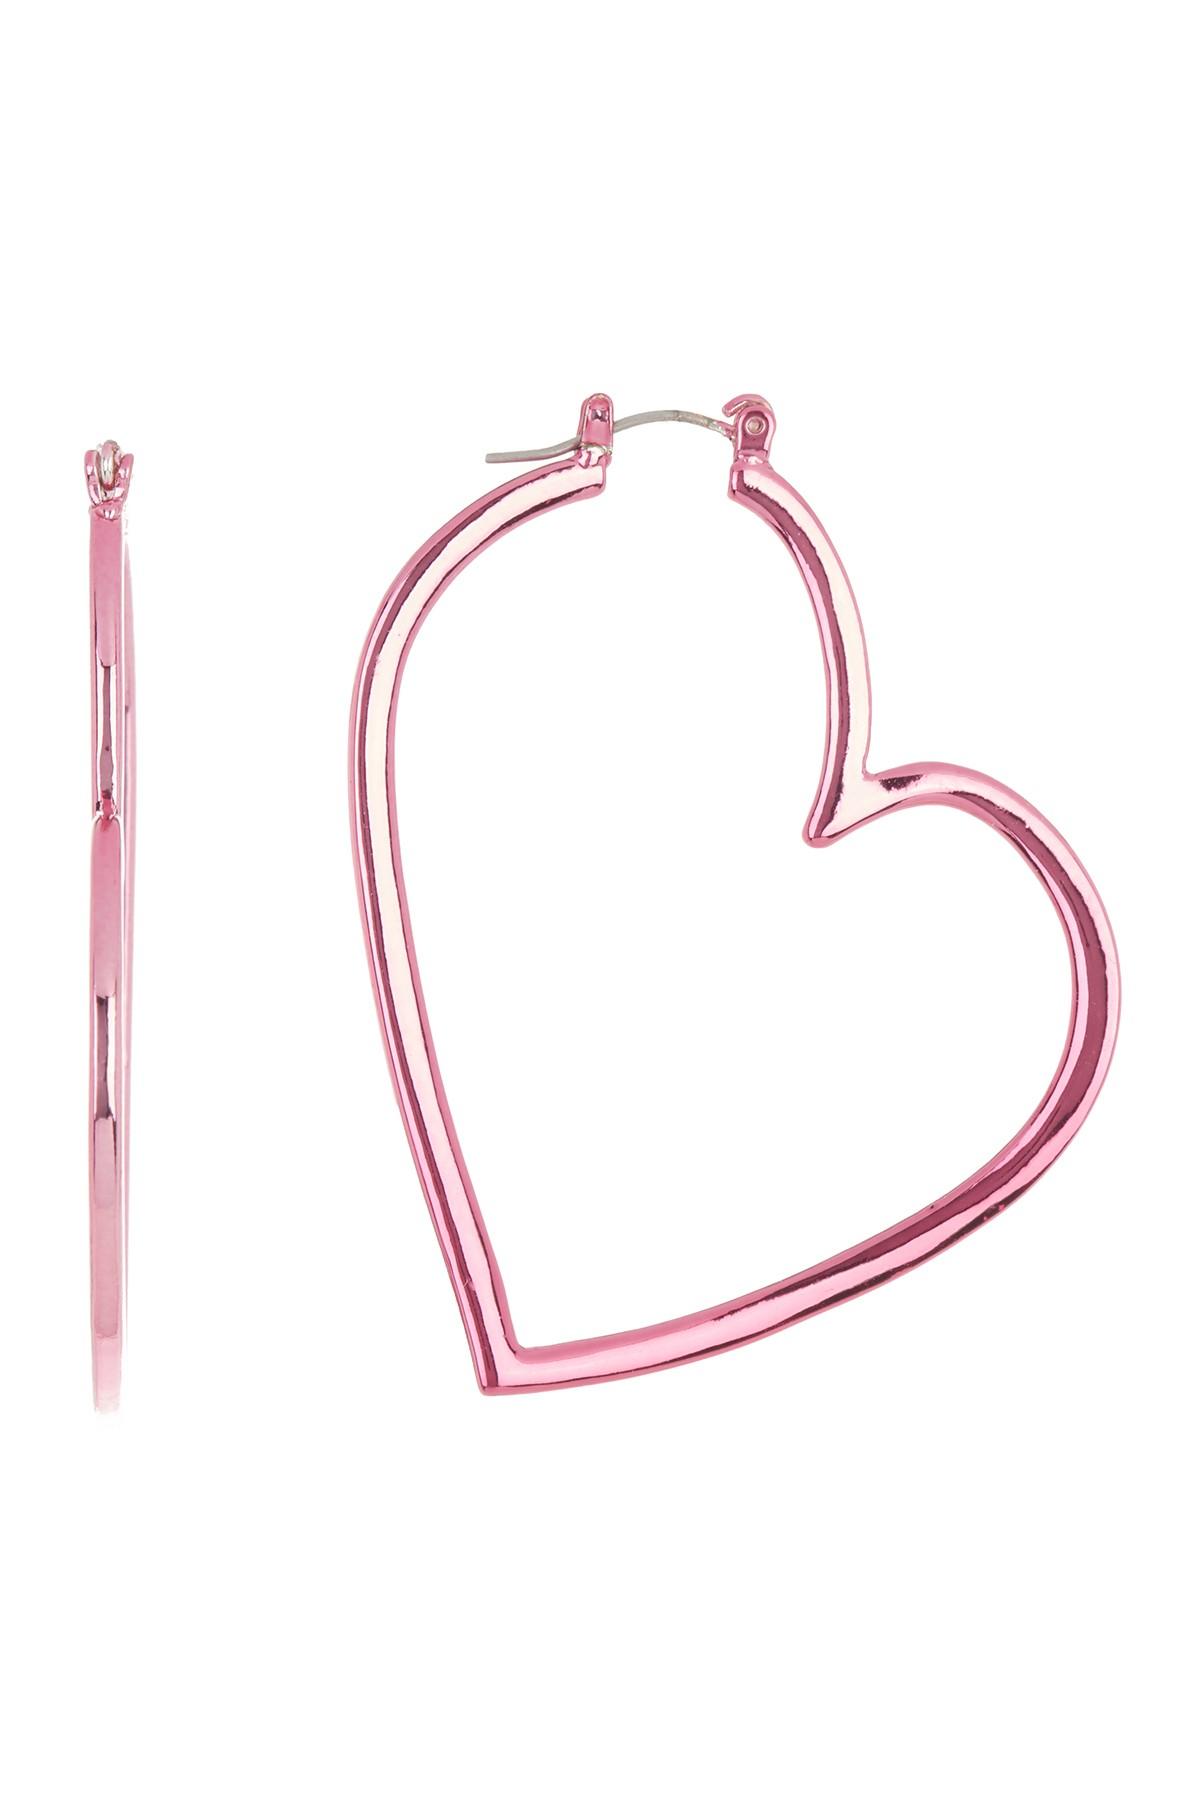 Betsey Johnson Pink Heart Hoop Earrings | Lyst